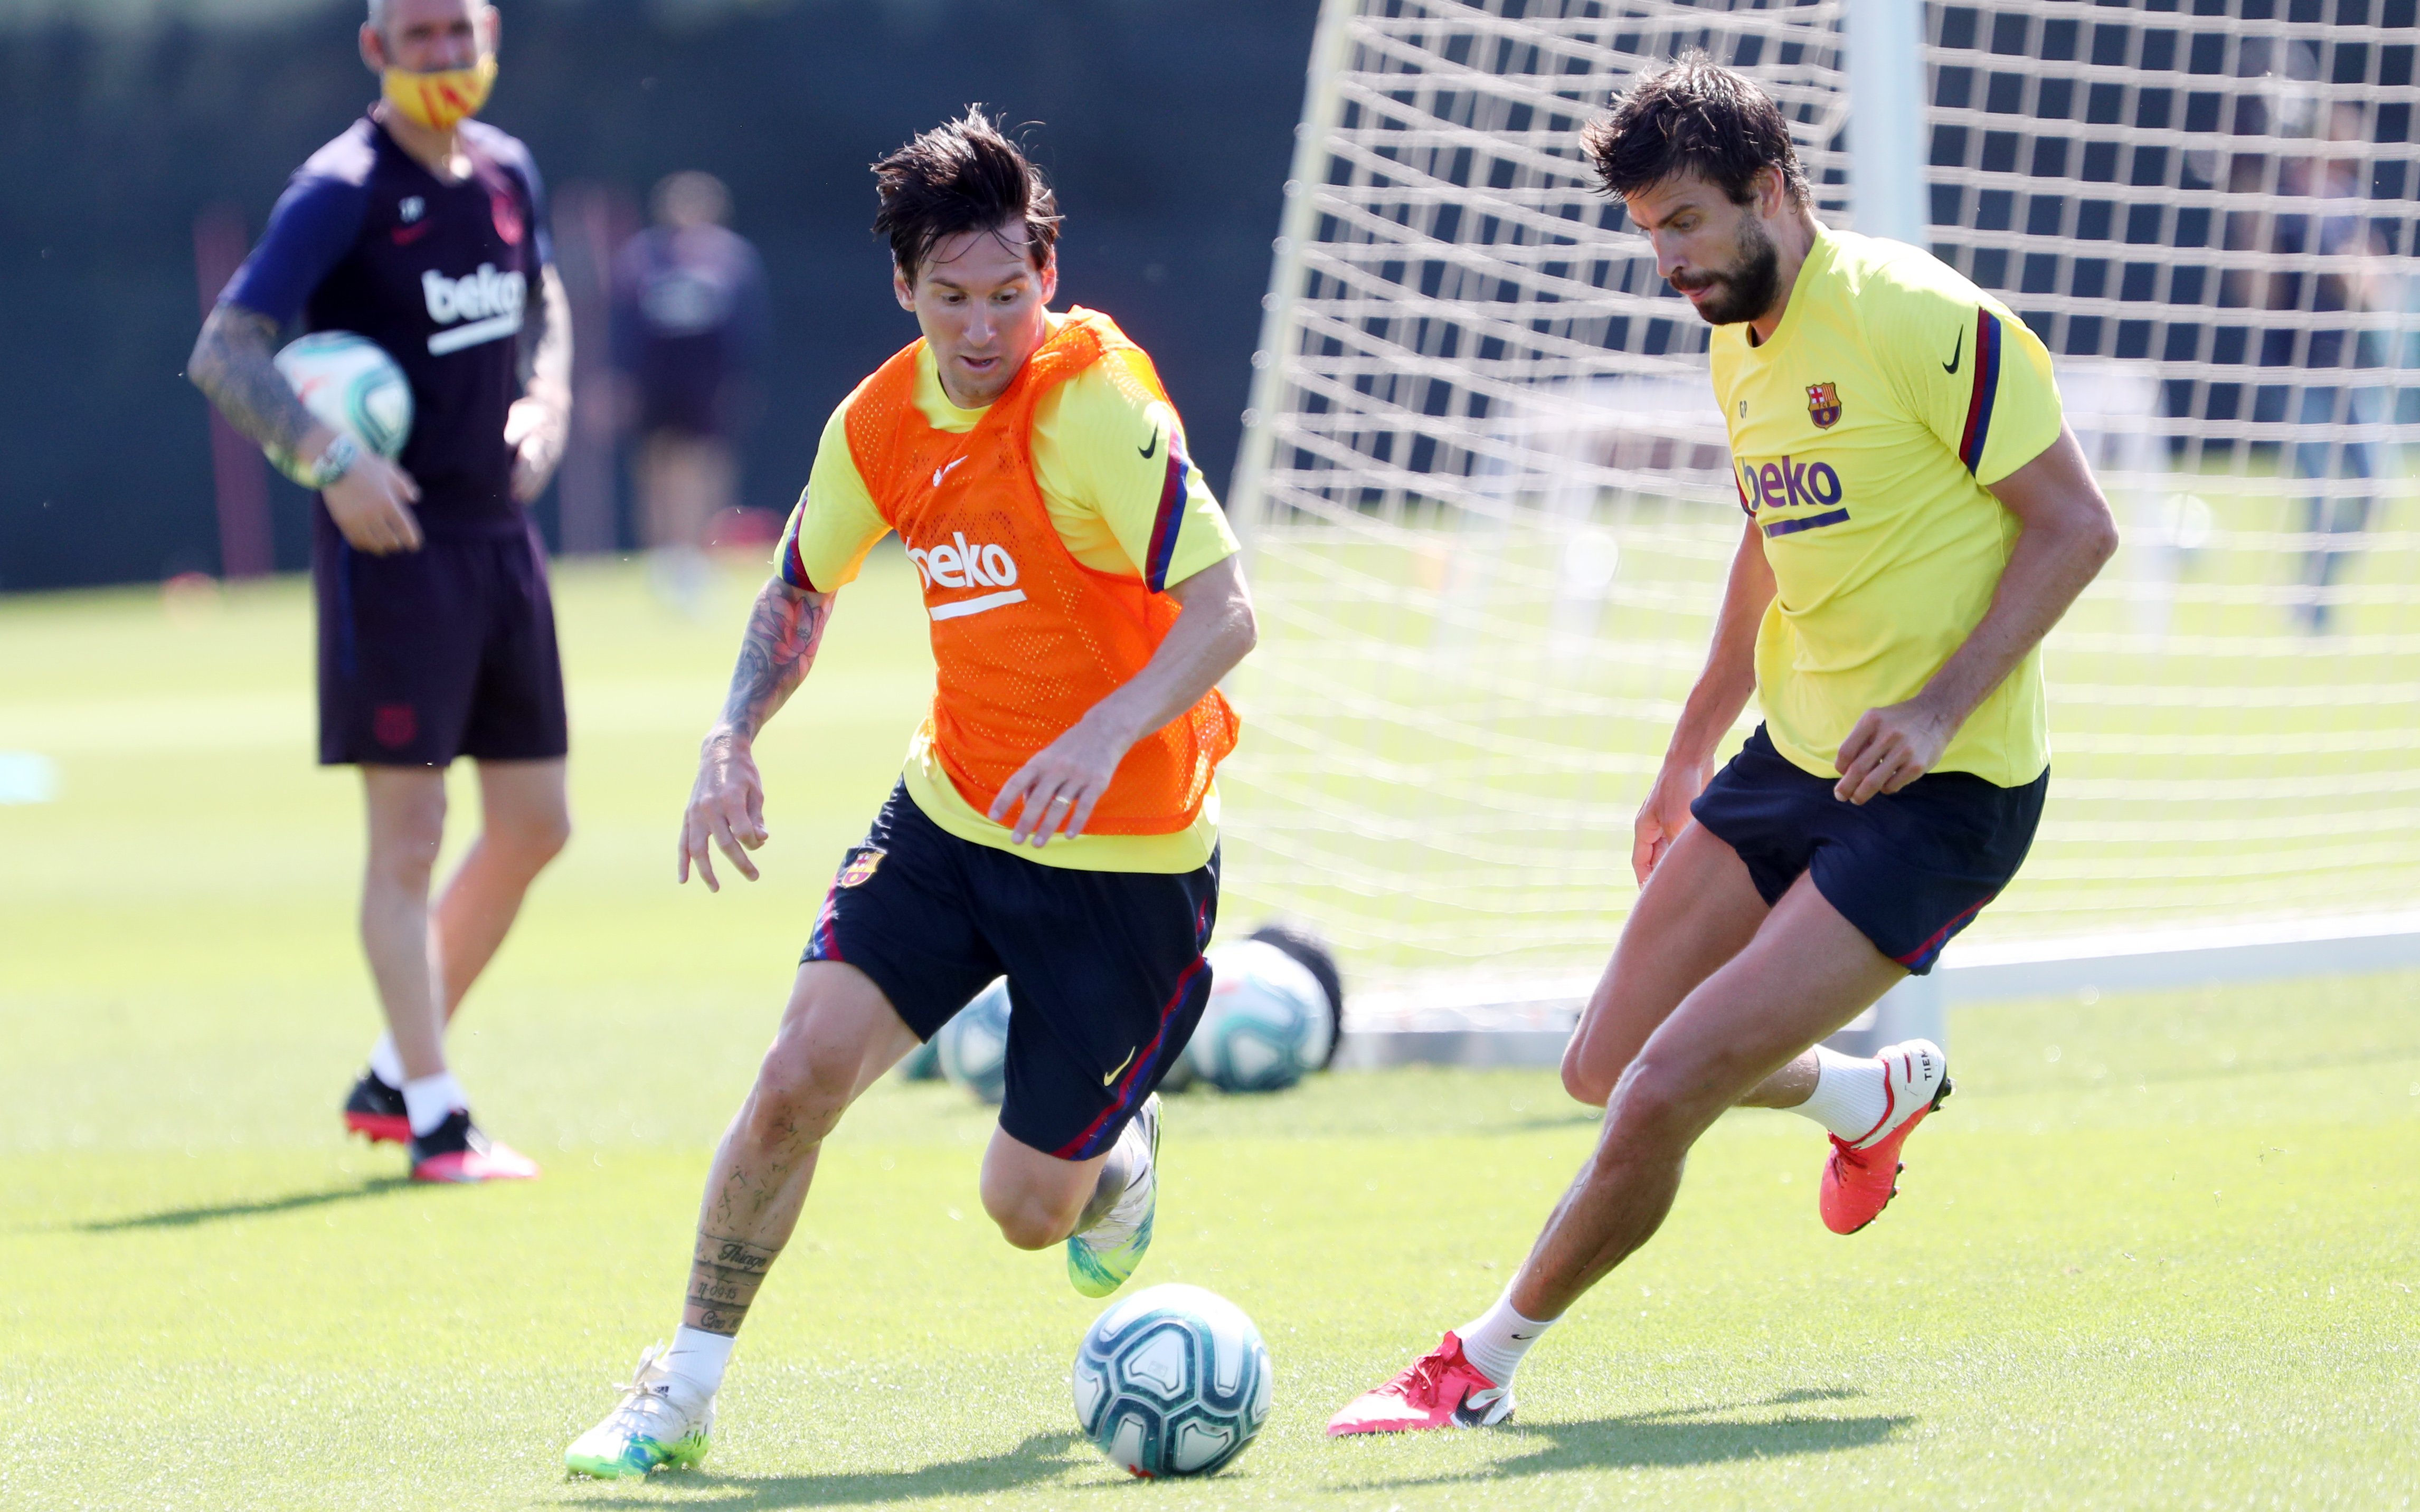 VÍDEO | ¿Está Messi preparado para la Liga? (La respuesta es clara)